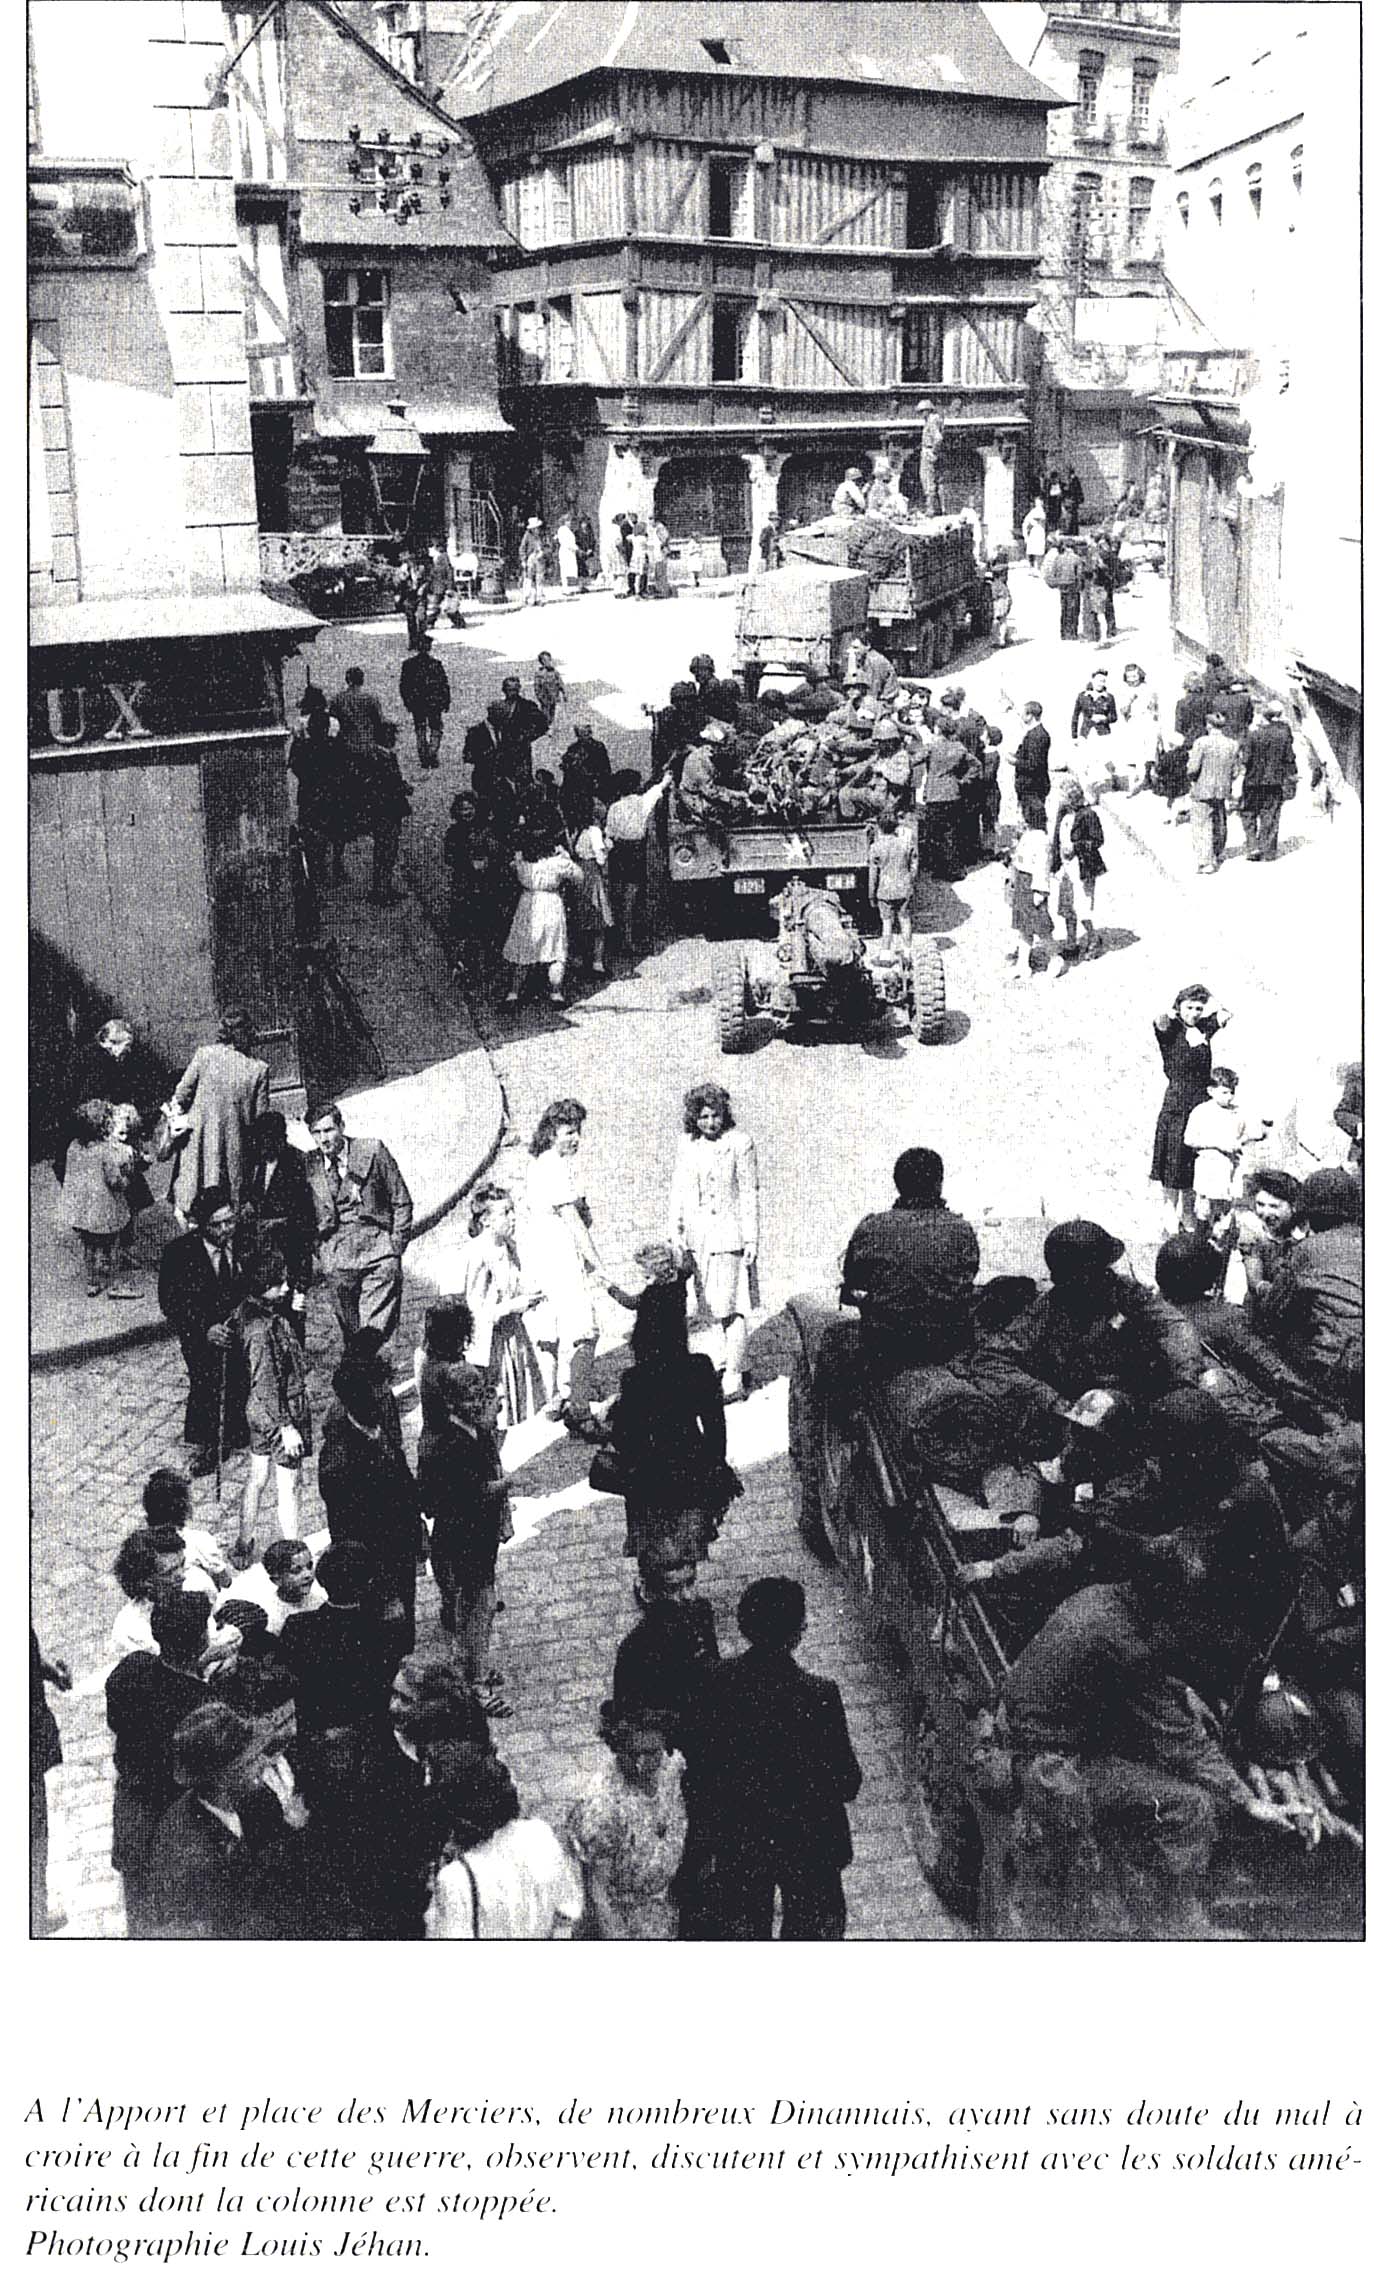 Dinan – Le dimanche 6 août 1944, il n’y avait plus d’Allemands dans la ville. Les Américains, avec l’aide précieuse de la Résistance, avaient libéré la ville.